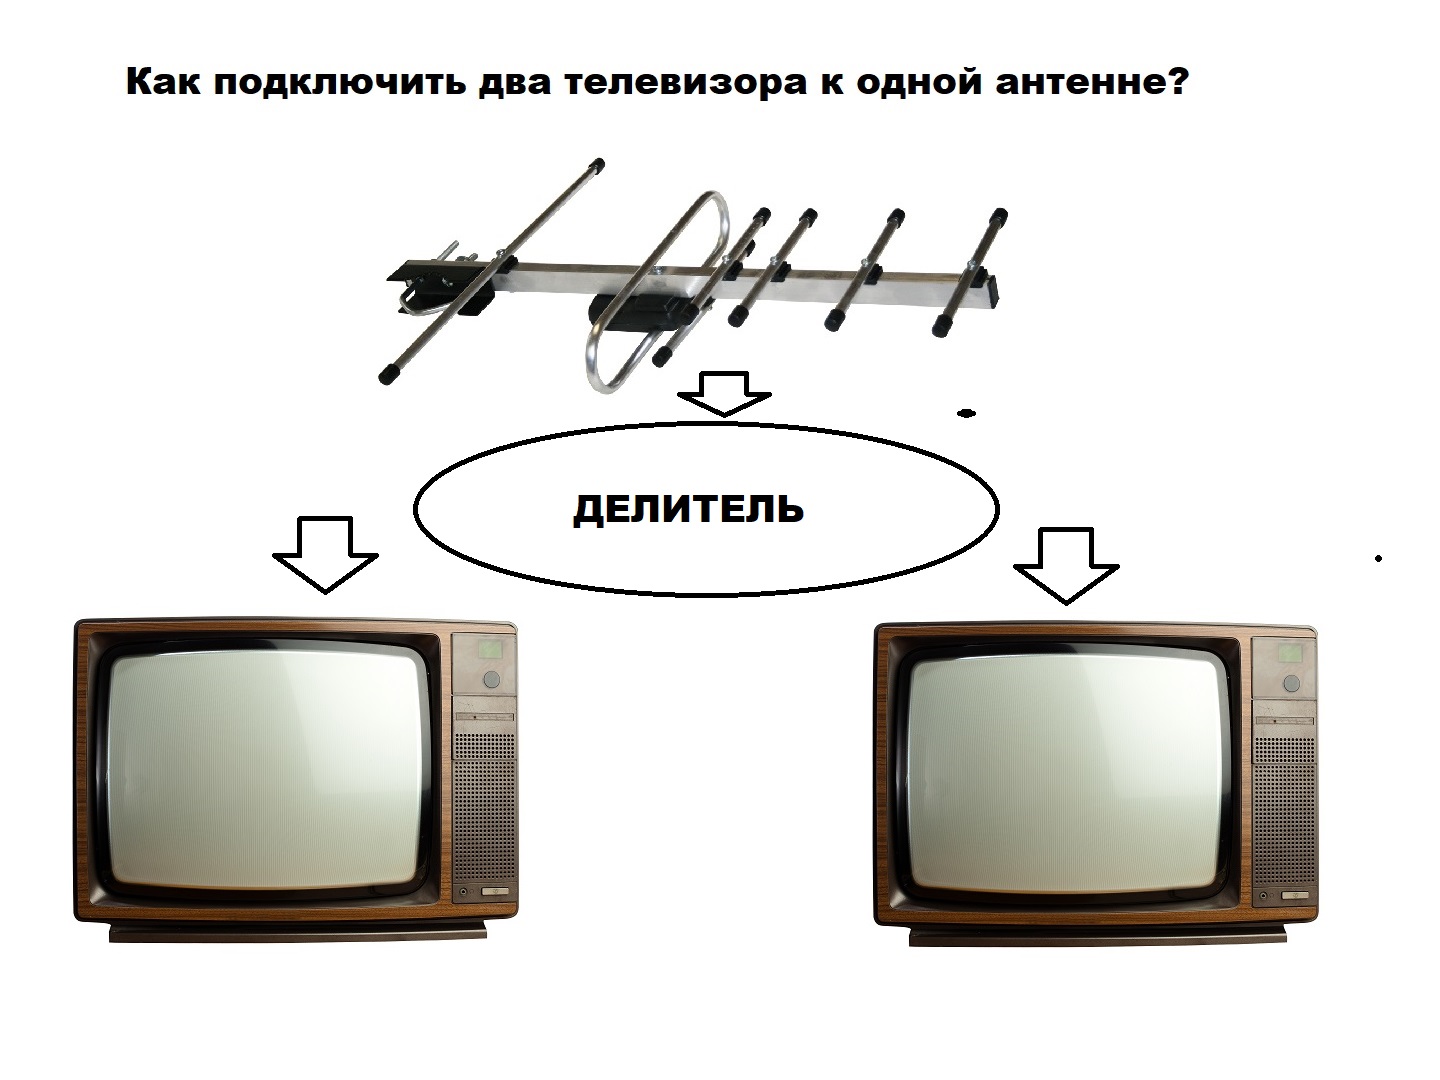 1 телевизор 2 антенны